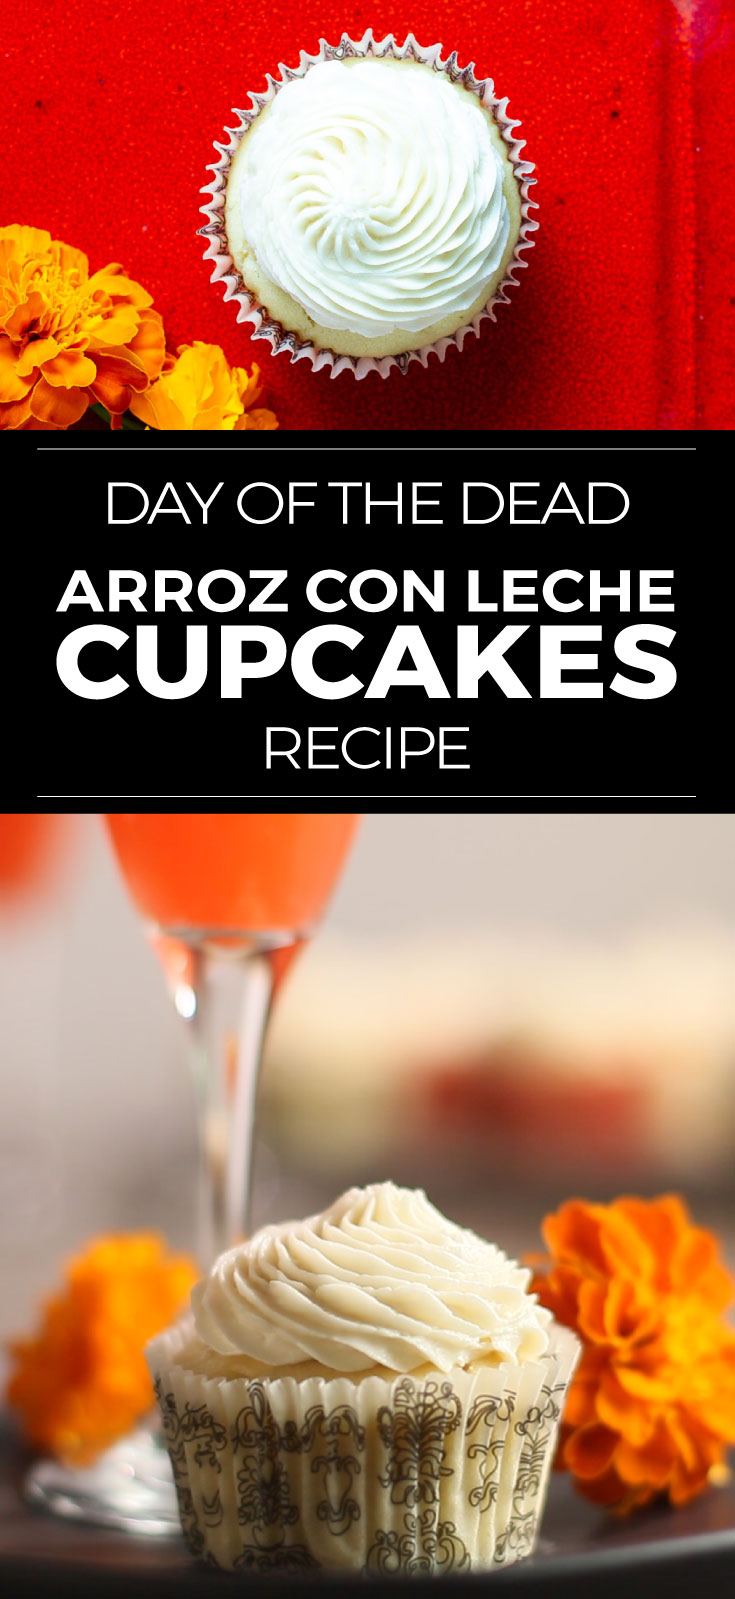 Day of the Dead recipe for arroz con leche cupcakes